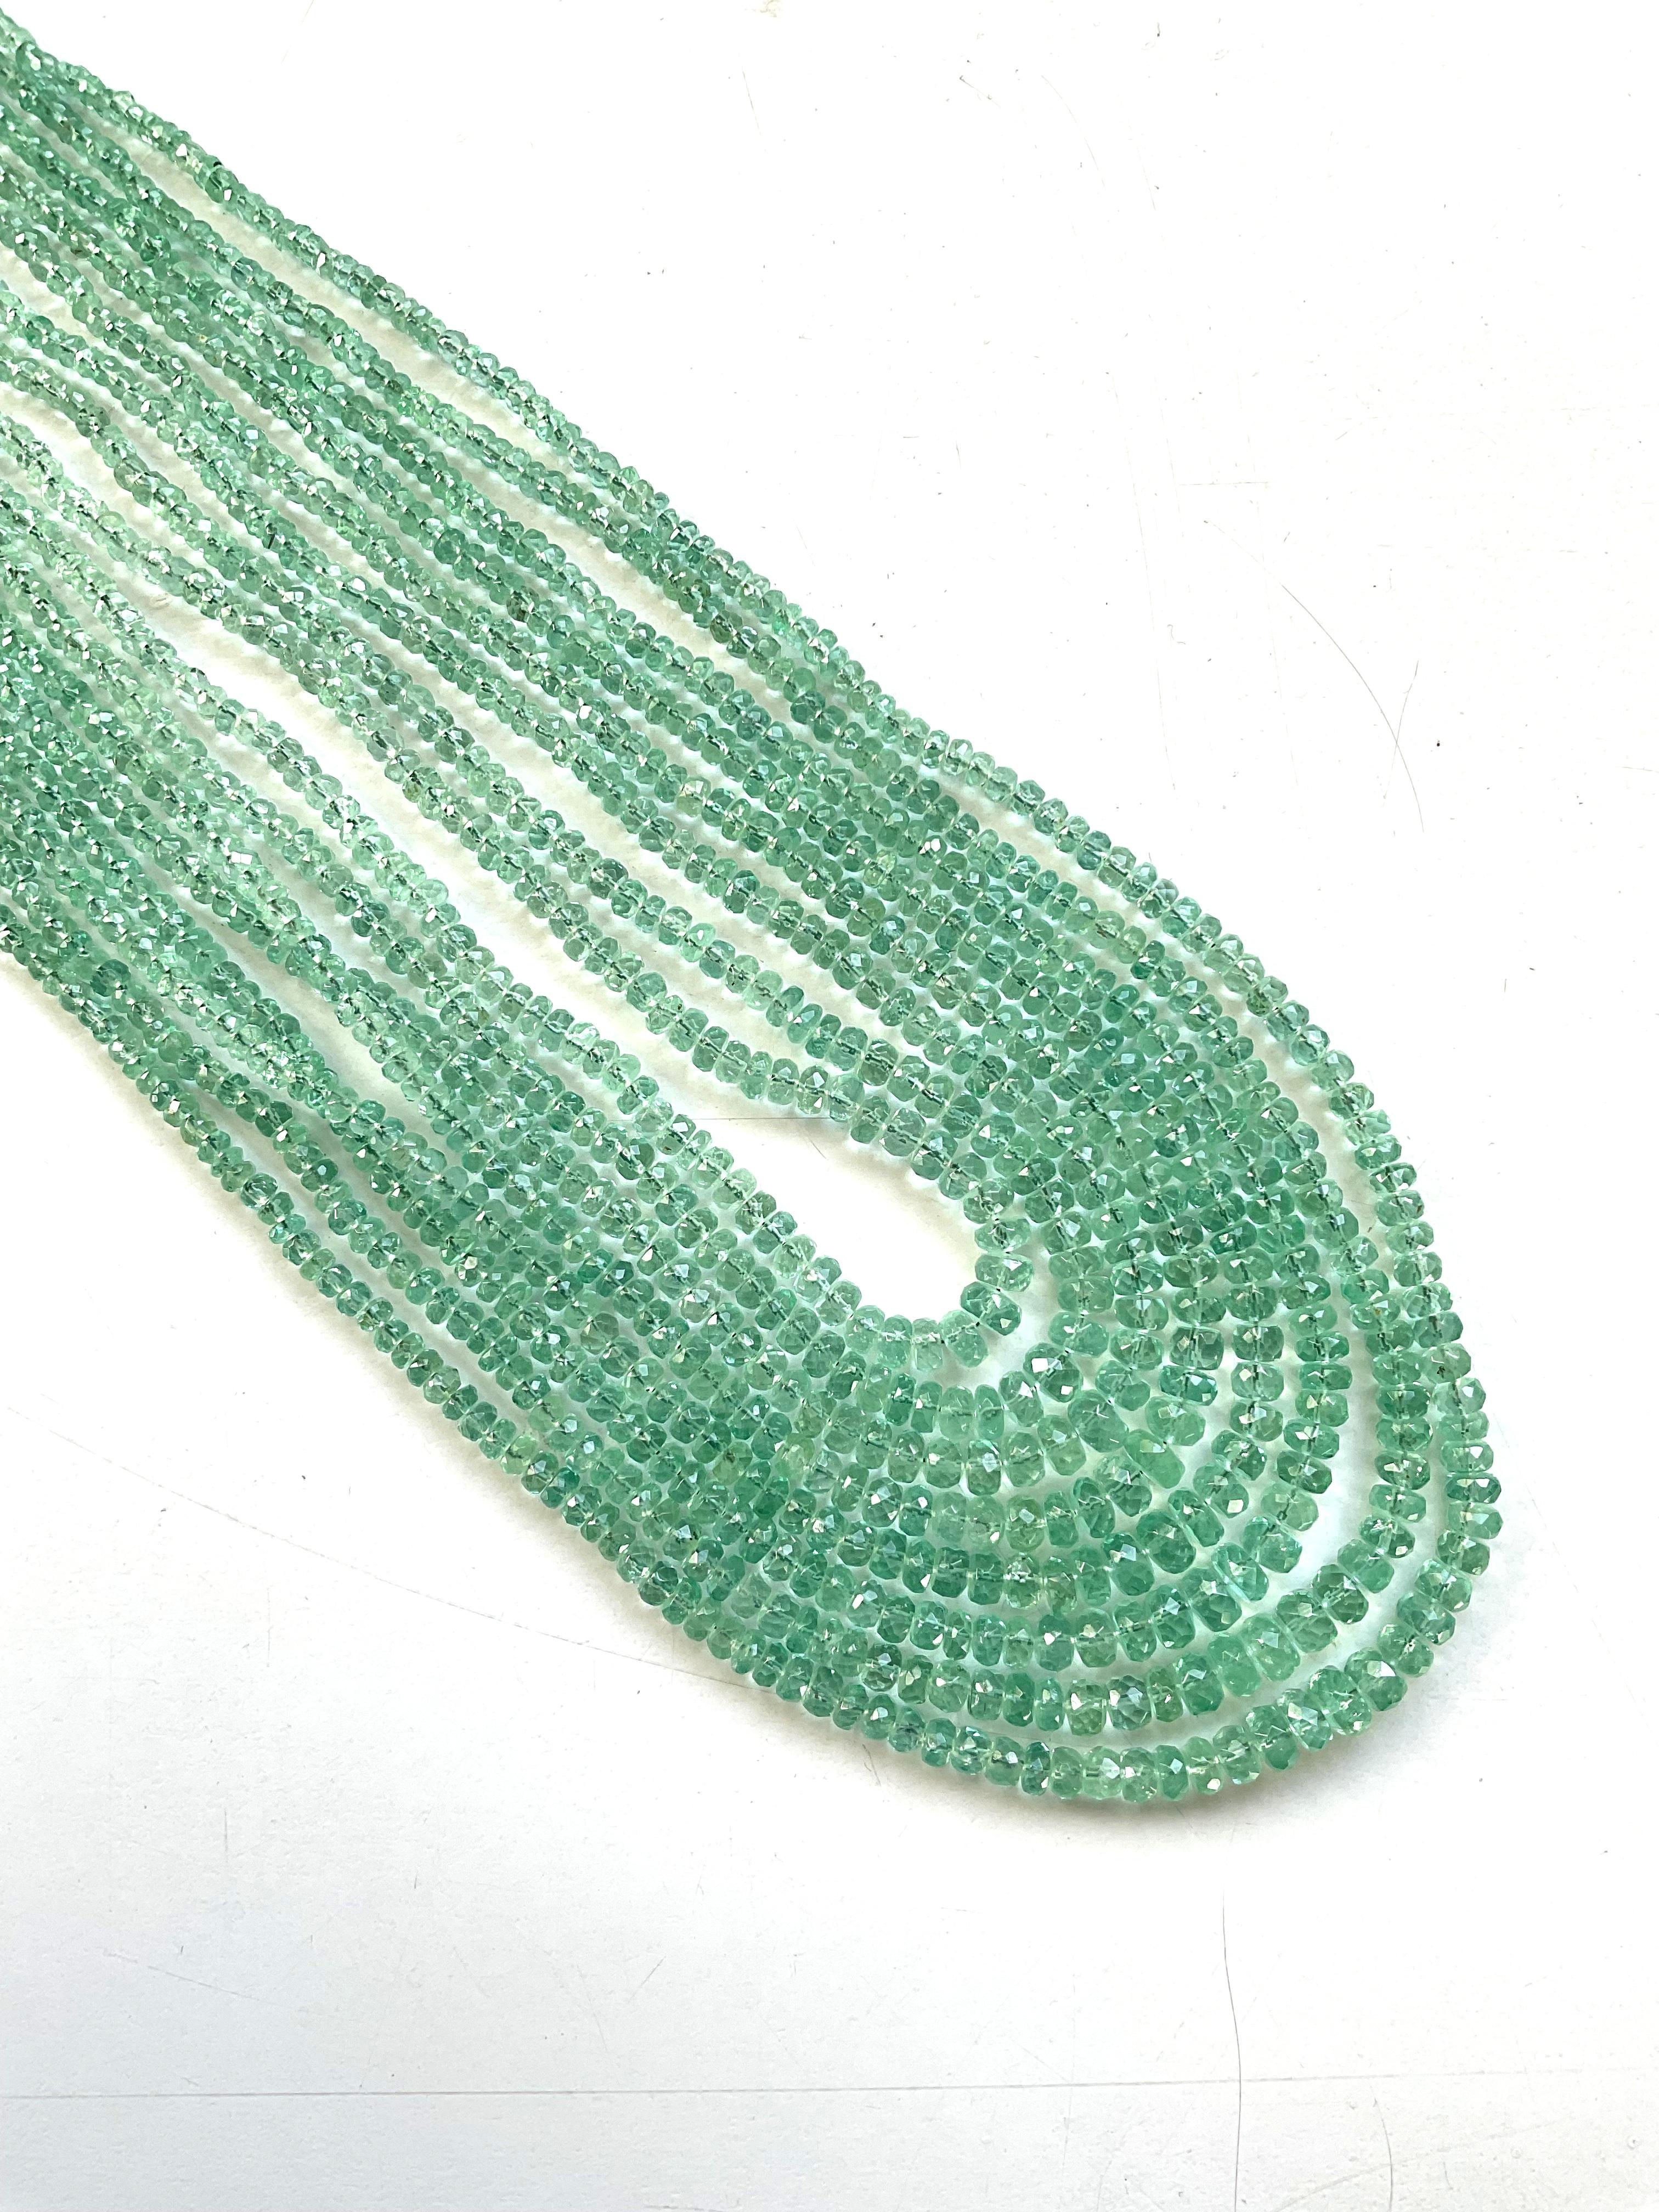 342,09 Karat Panjshir Smaragd Facettierte Perlen für feinen Schmuck Natürlicher Edelstein
Edelstein - Smaragd
Gewicht - 342,09 Karat
Form - Perlen
Größe - 2,5 bis 5 MM
Anzahl - 8 Zeile